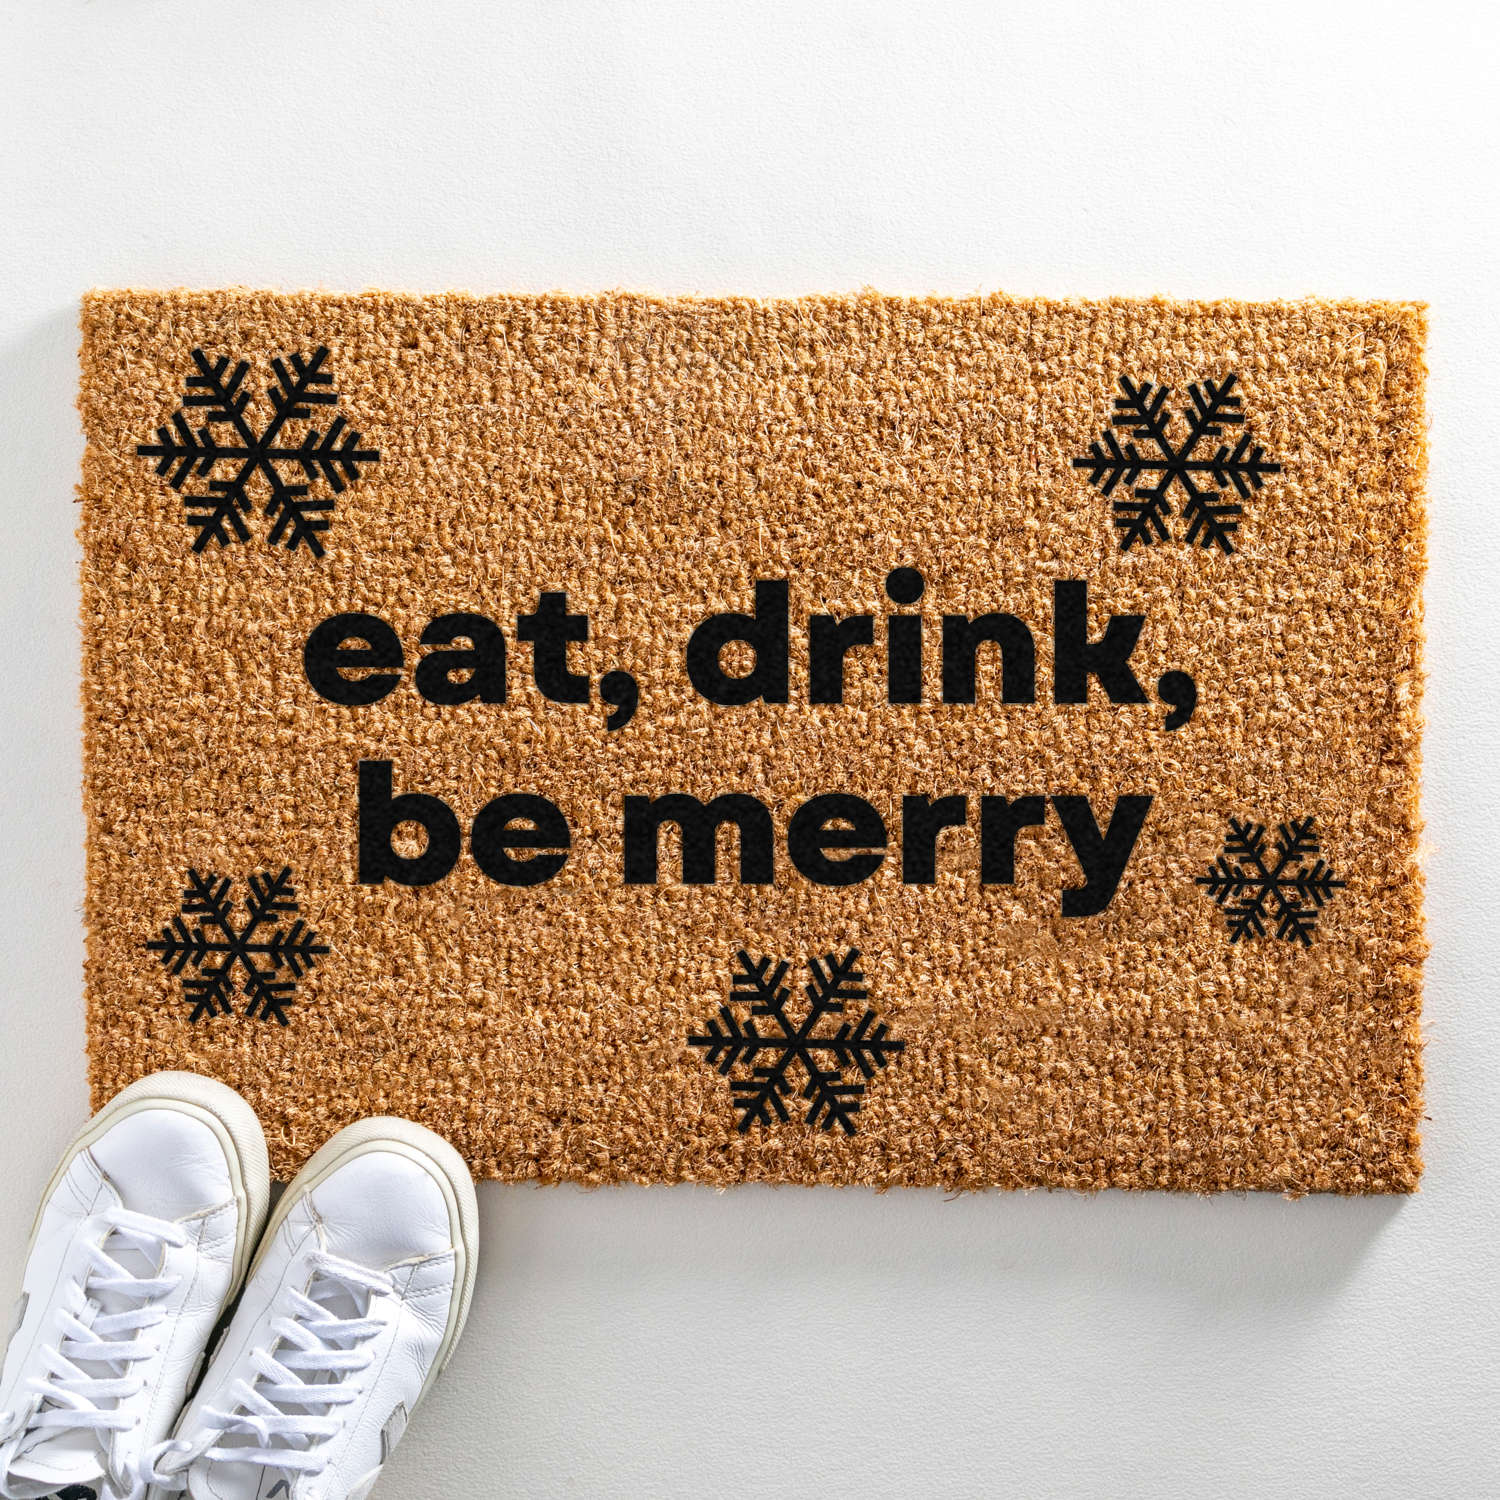 Eat, drink, be merry Christmas design doormat